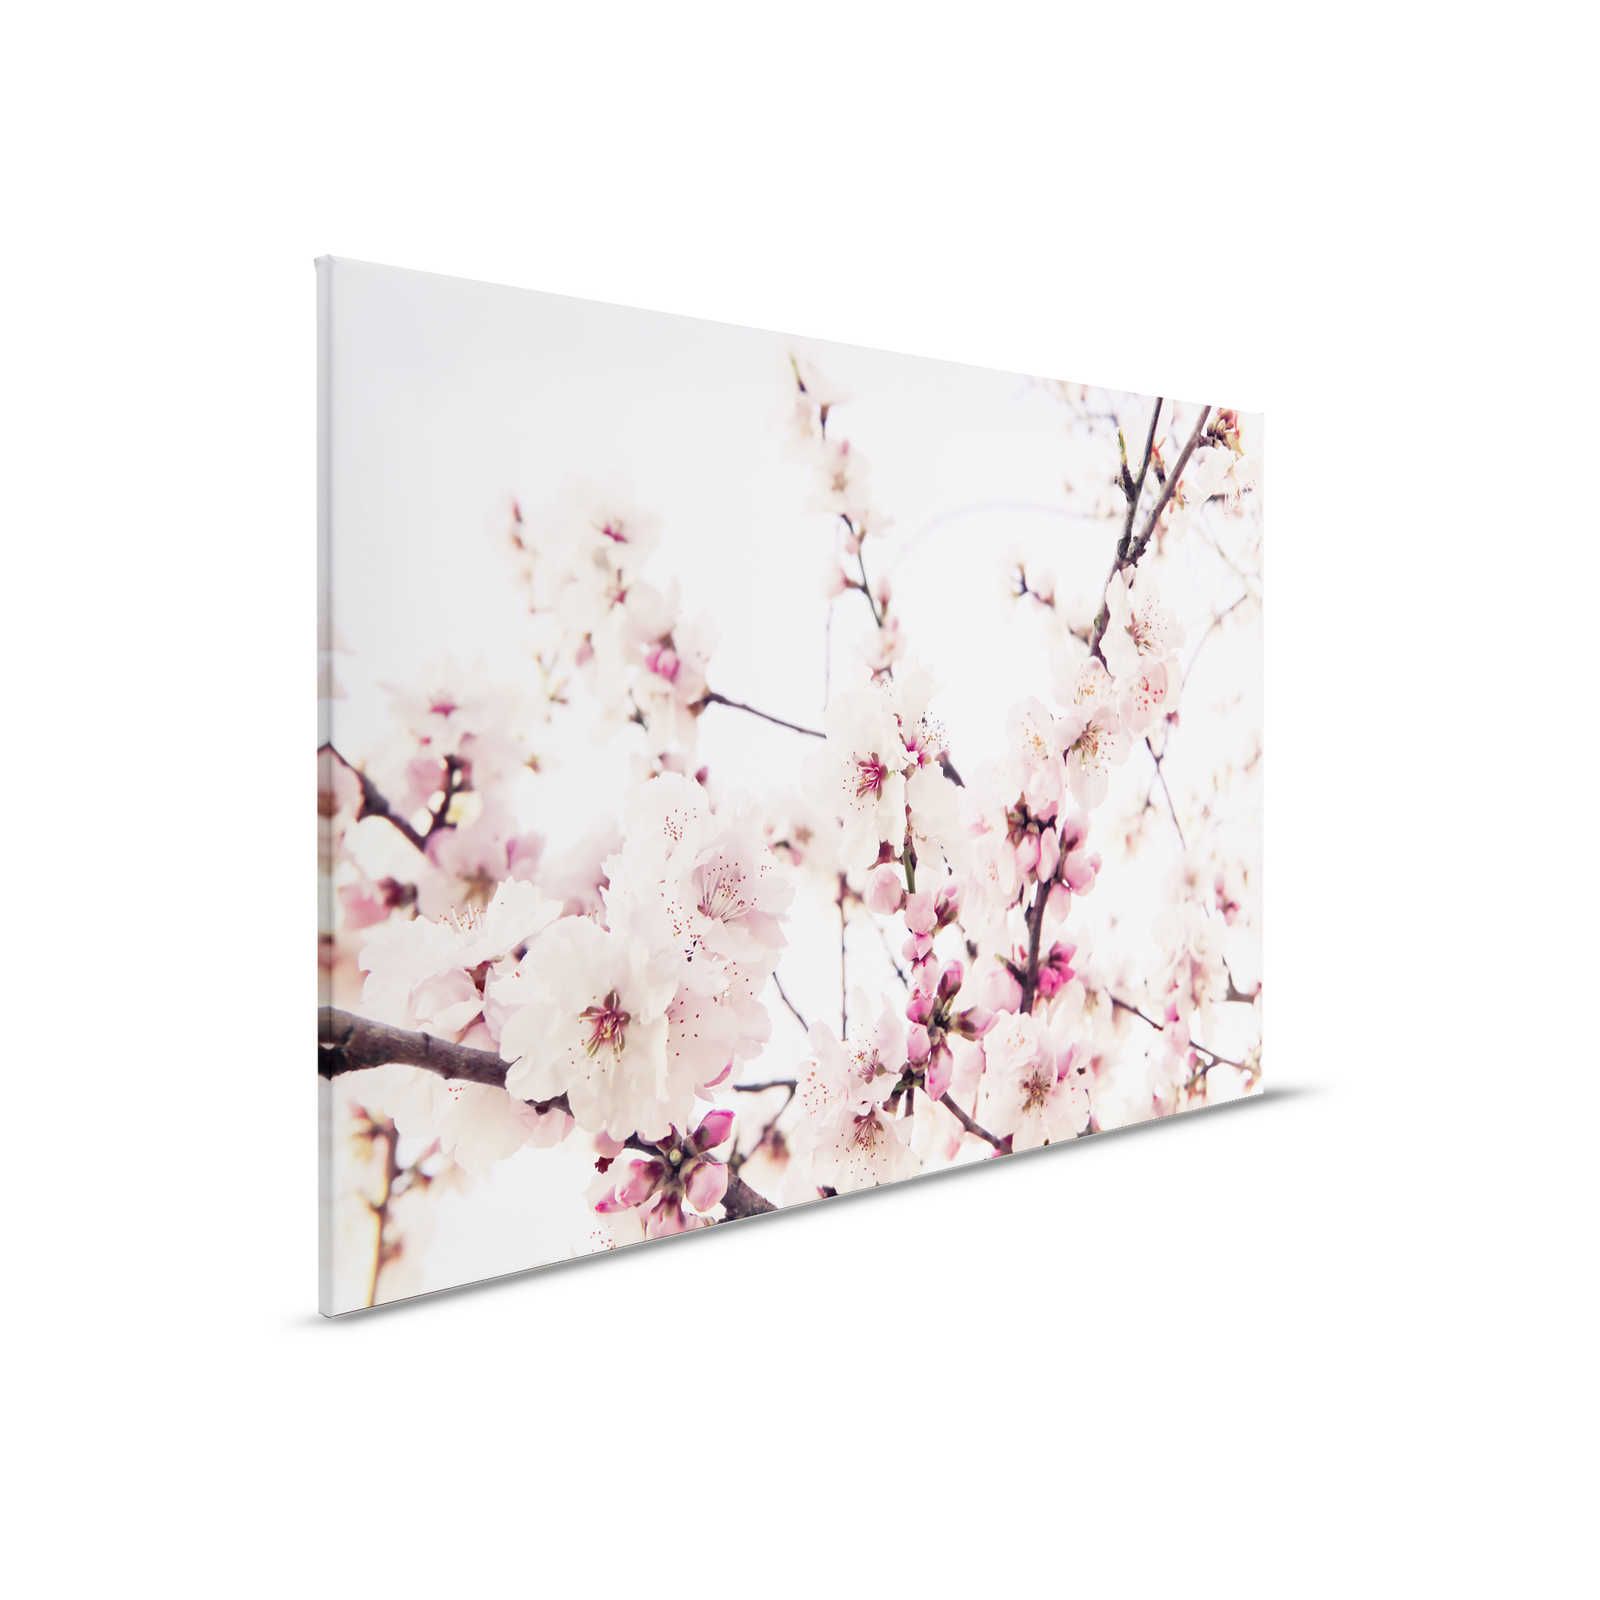 Naturel toile avec des fleurs de cerisier - 0,90 m x 0,60 m
